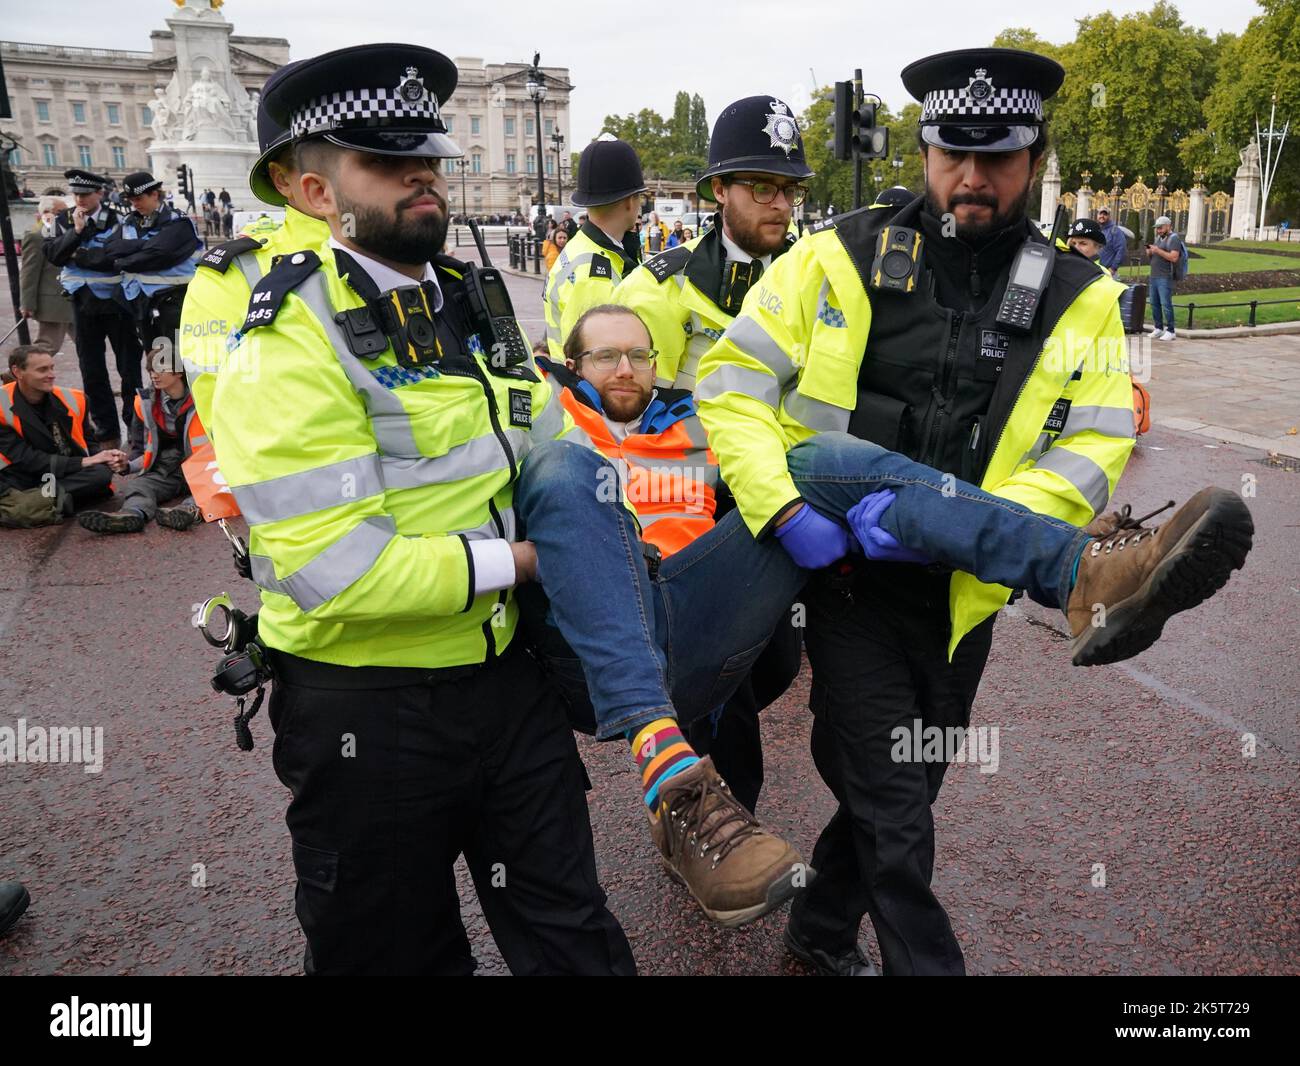 Polizeibeamte entfernen einen Aktivisten aus einem Just Stop Oil-Protest in der Mall, in der Nähe des Buckingham Palace, London. Aktivisten blockieren seit Anfang Oktober Straßen im Zentrum von London, als Teil ihrer Kampagne, zukünftige Gas- und Ölprojekte zu stoppen. Bilddatum: Montag, 10. Oktober 2022. Stockfoto